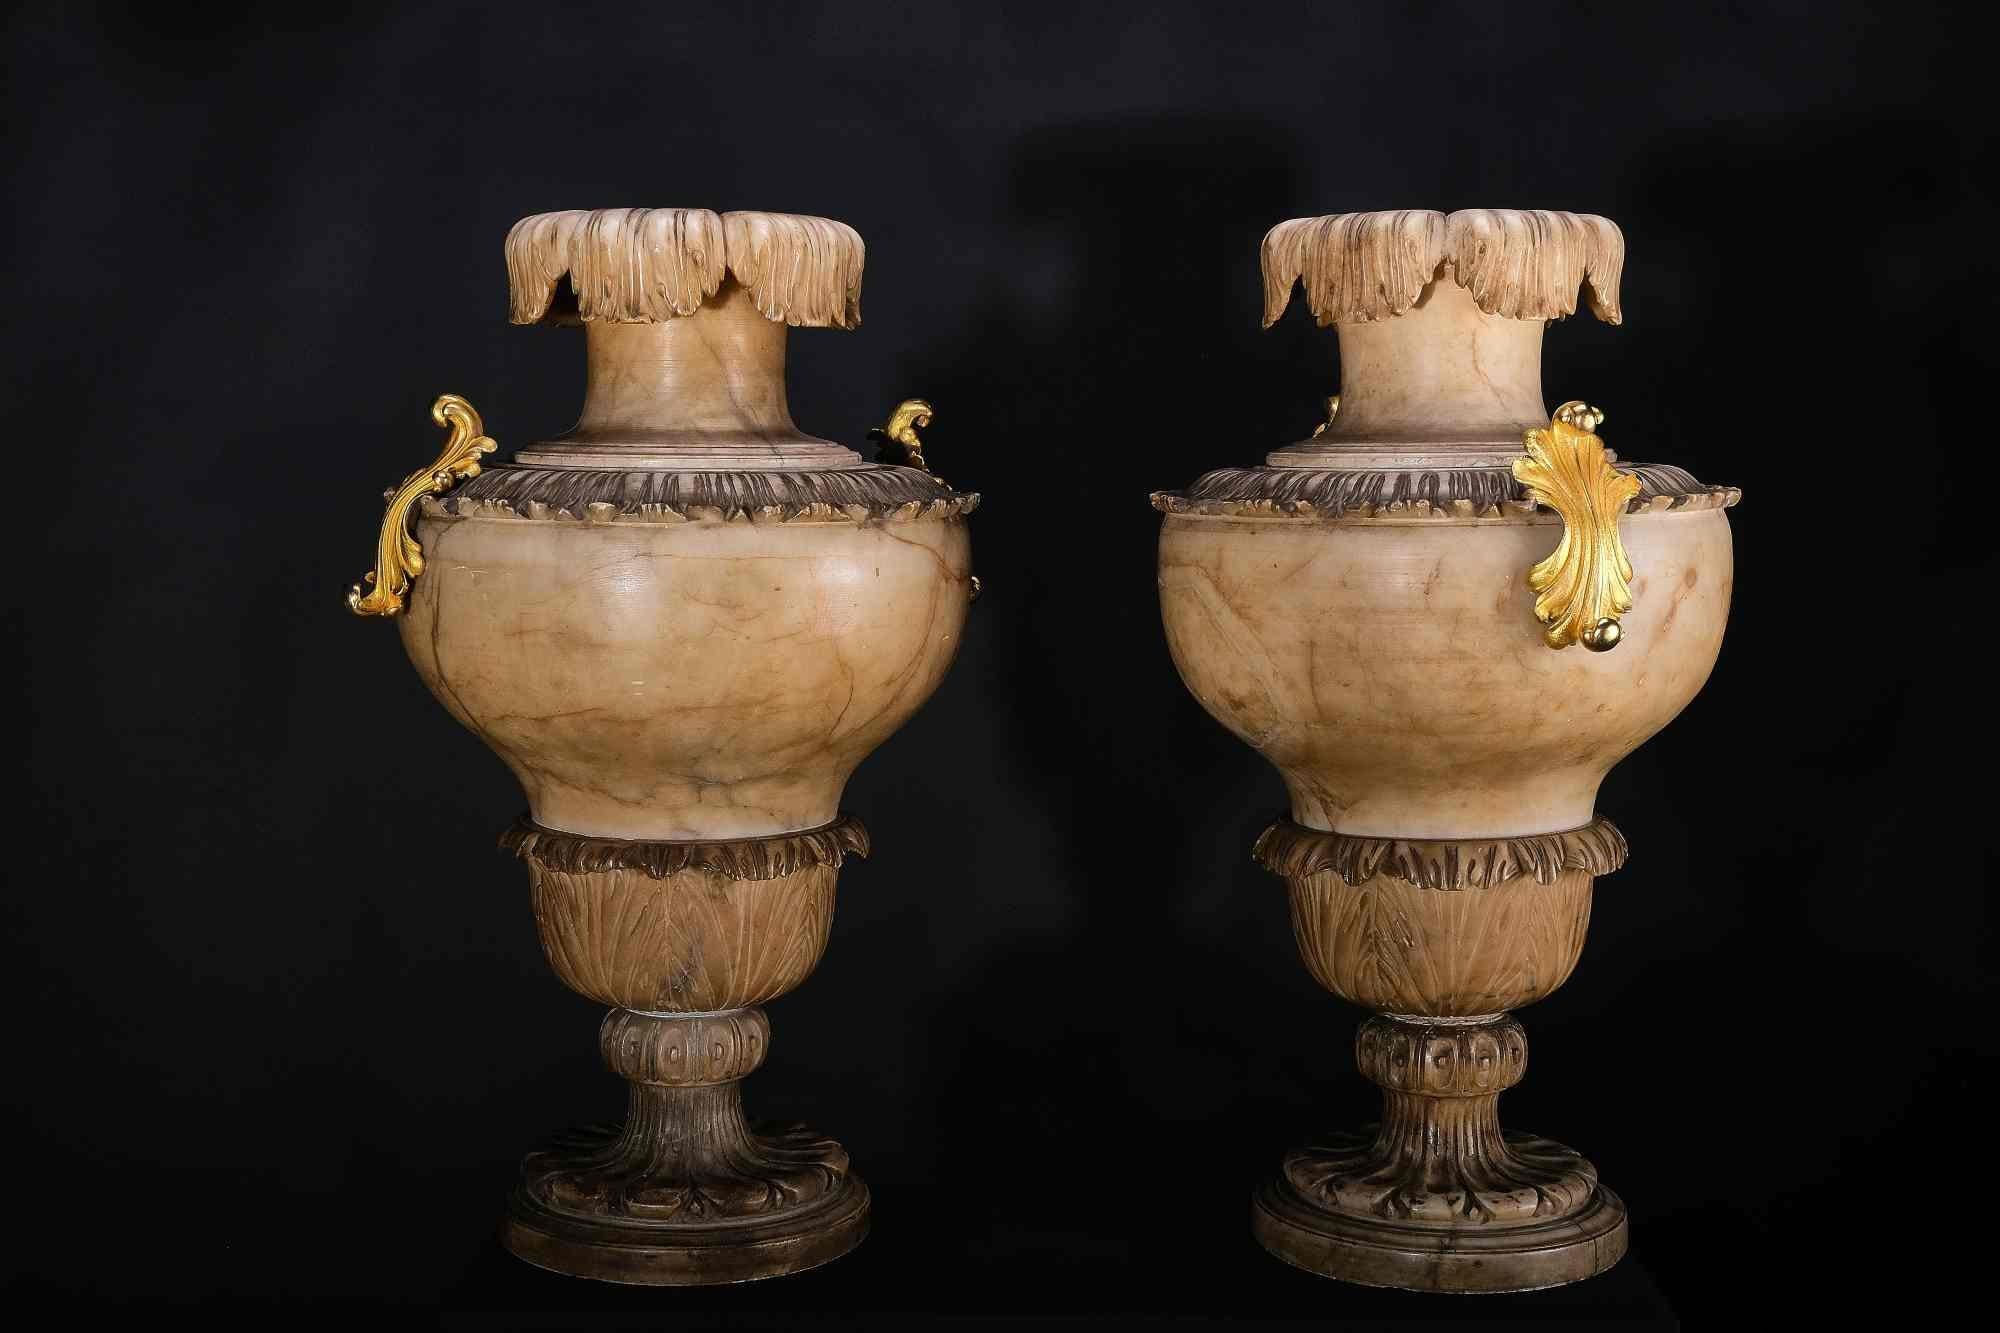 Die Vasen haben eine Balusterform und sind reich mit Blattwerk und Akanthus verziert. Der Fuß ist mehrfach verziert, die Schulter hat ein Band aus umlaufendem Blattwerk mit montierten und feuervergoldeten Griffen. Der Kragen endet in einem